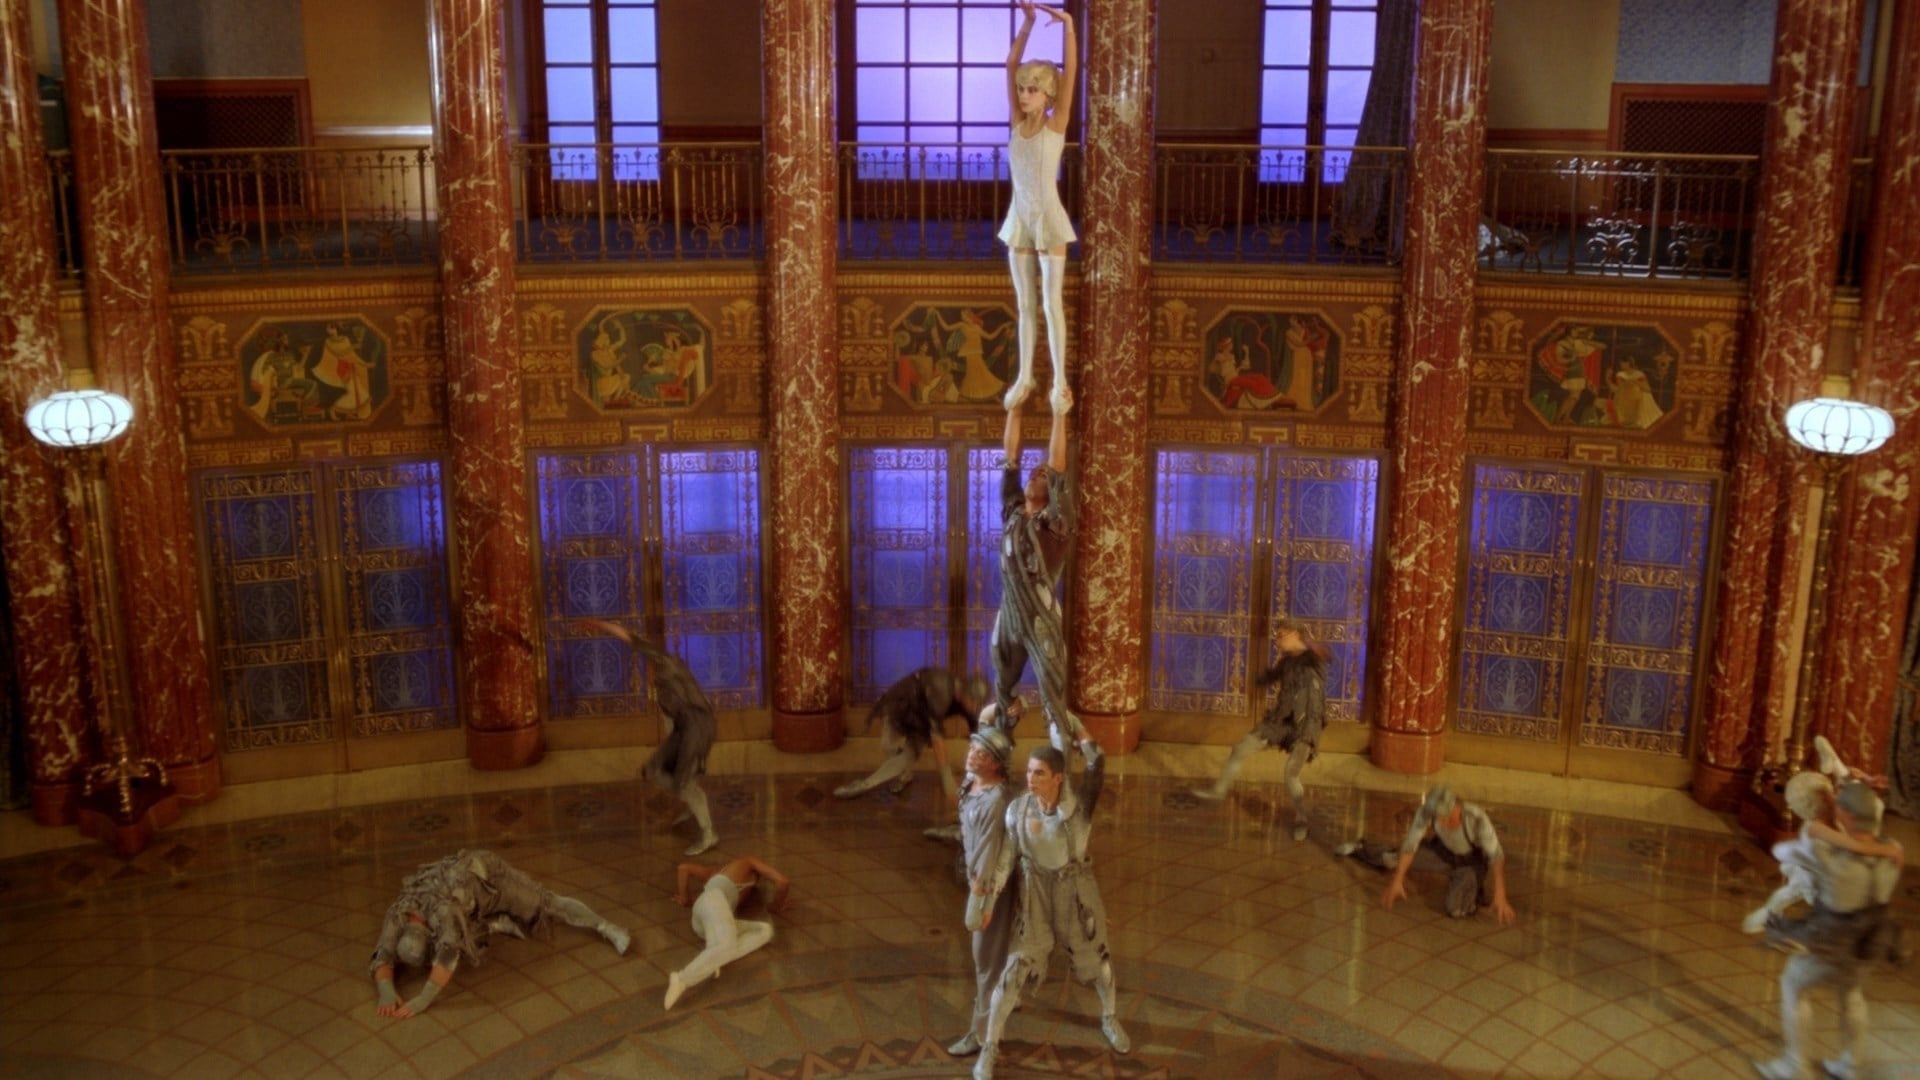 Cirque du Soleil: Journey of Man background